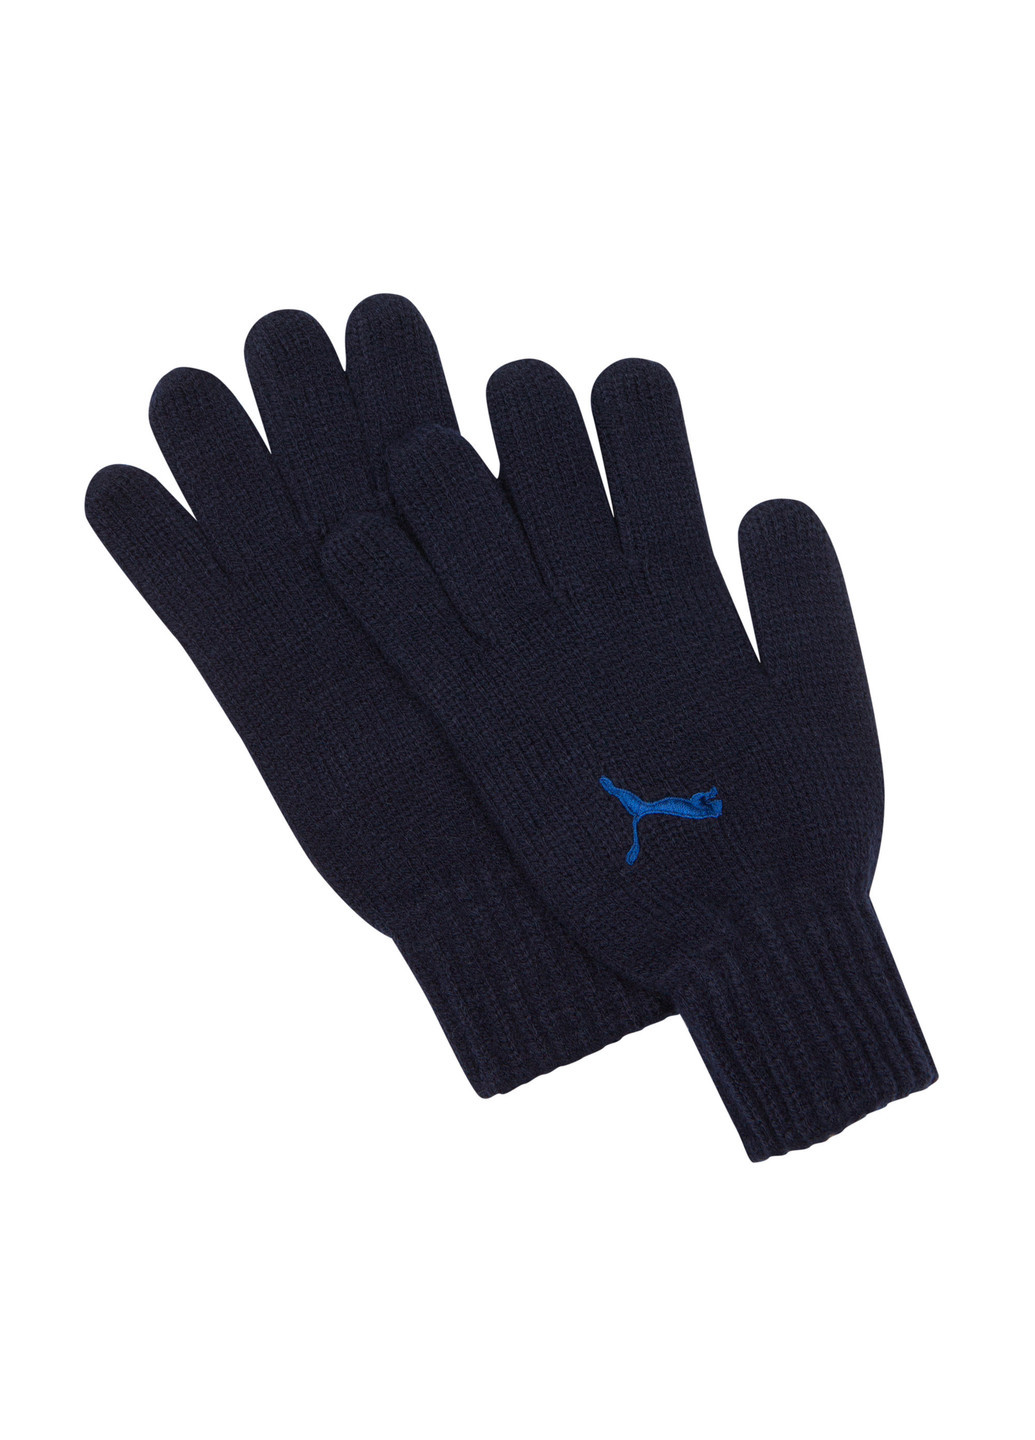 В'язані рукавички Puma Fundamentals Knit Gloves однотонні сині спортивні